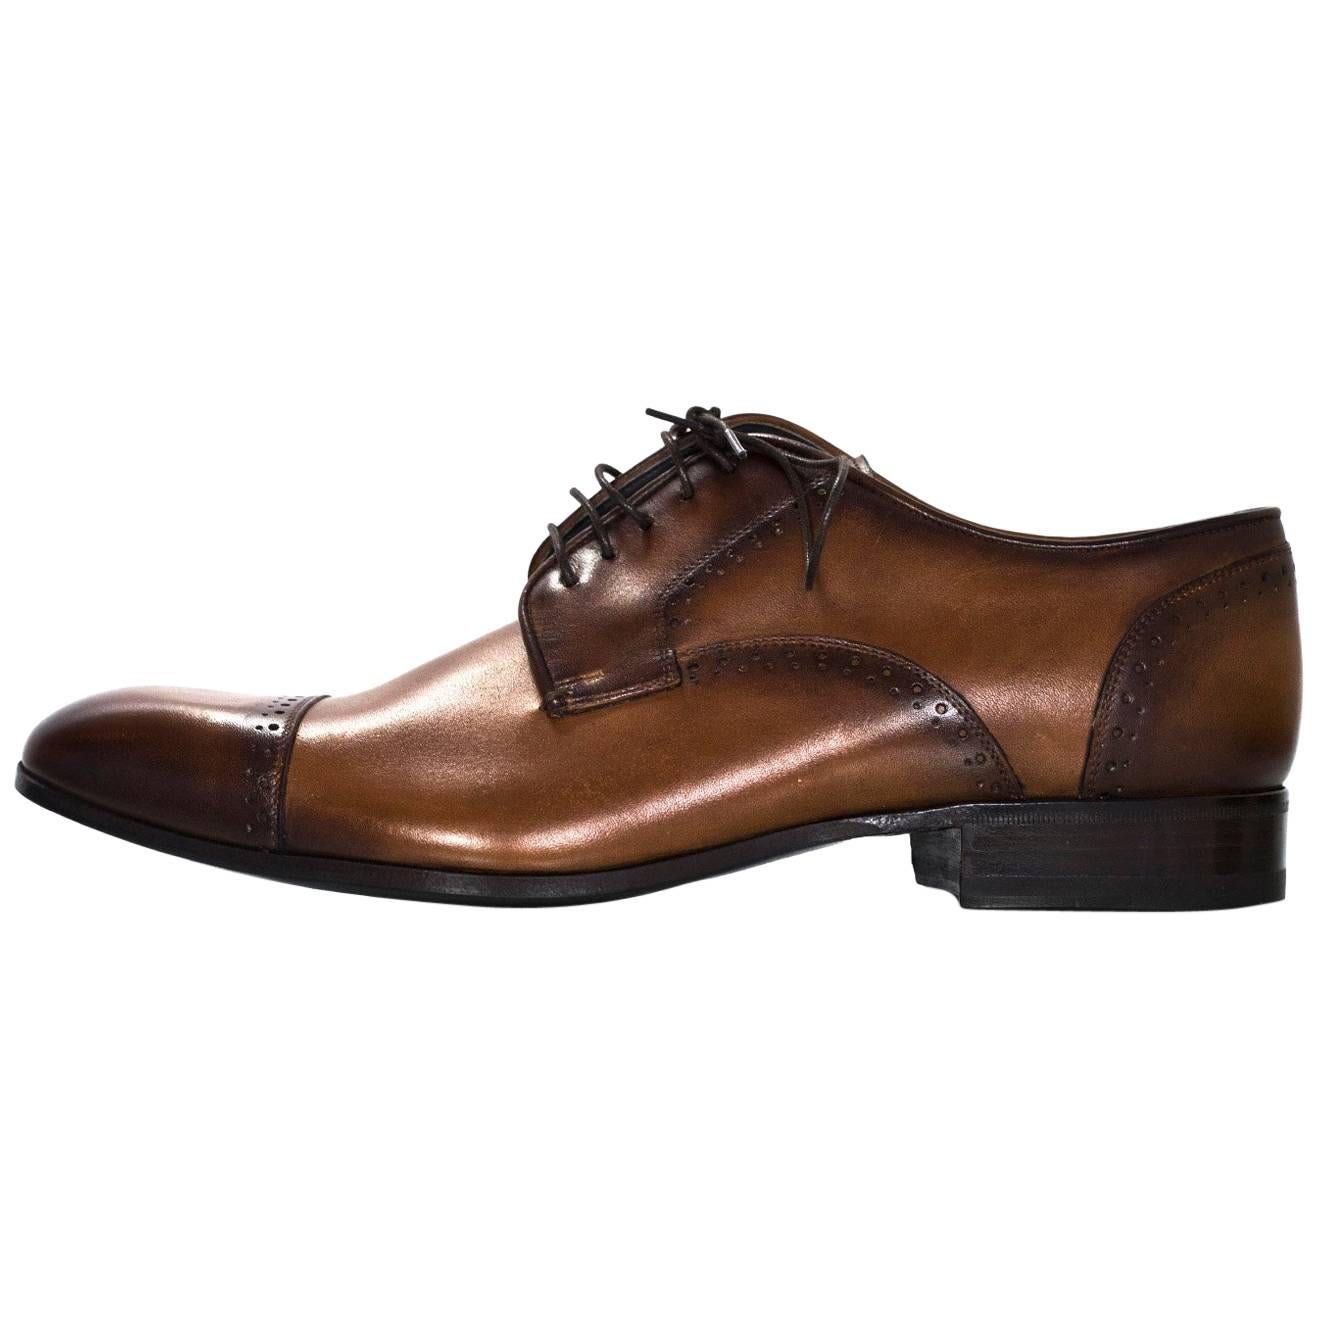 Lanvin Men's Brown Leather Oxford Shoes Sz 8 NIB